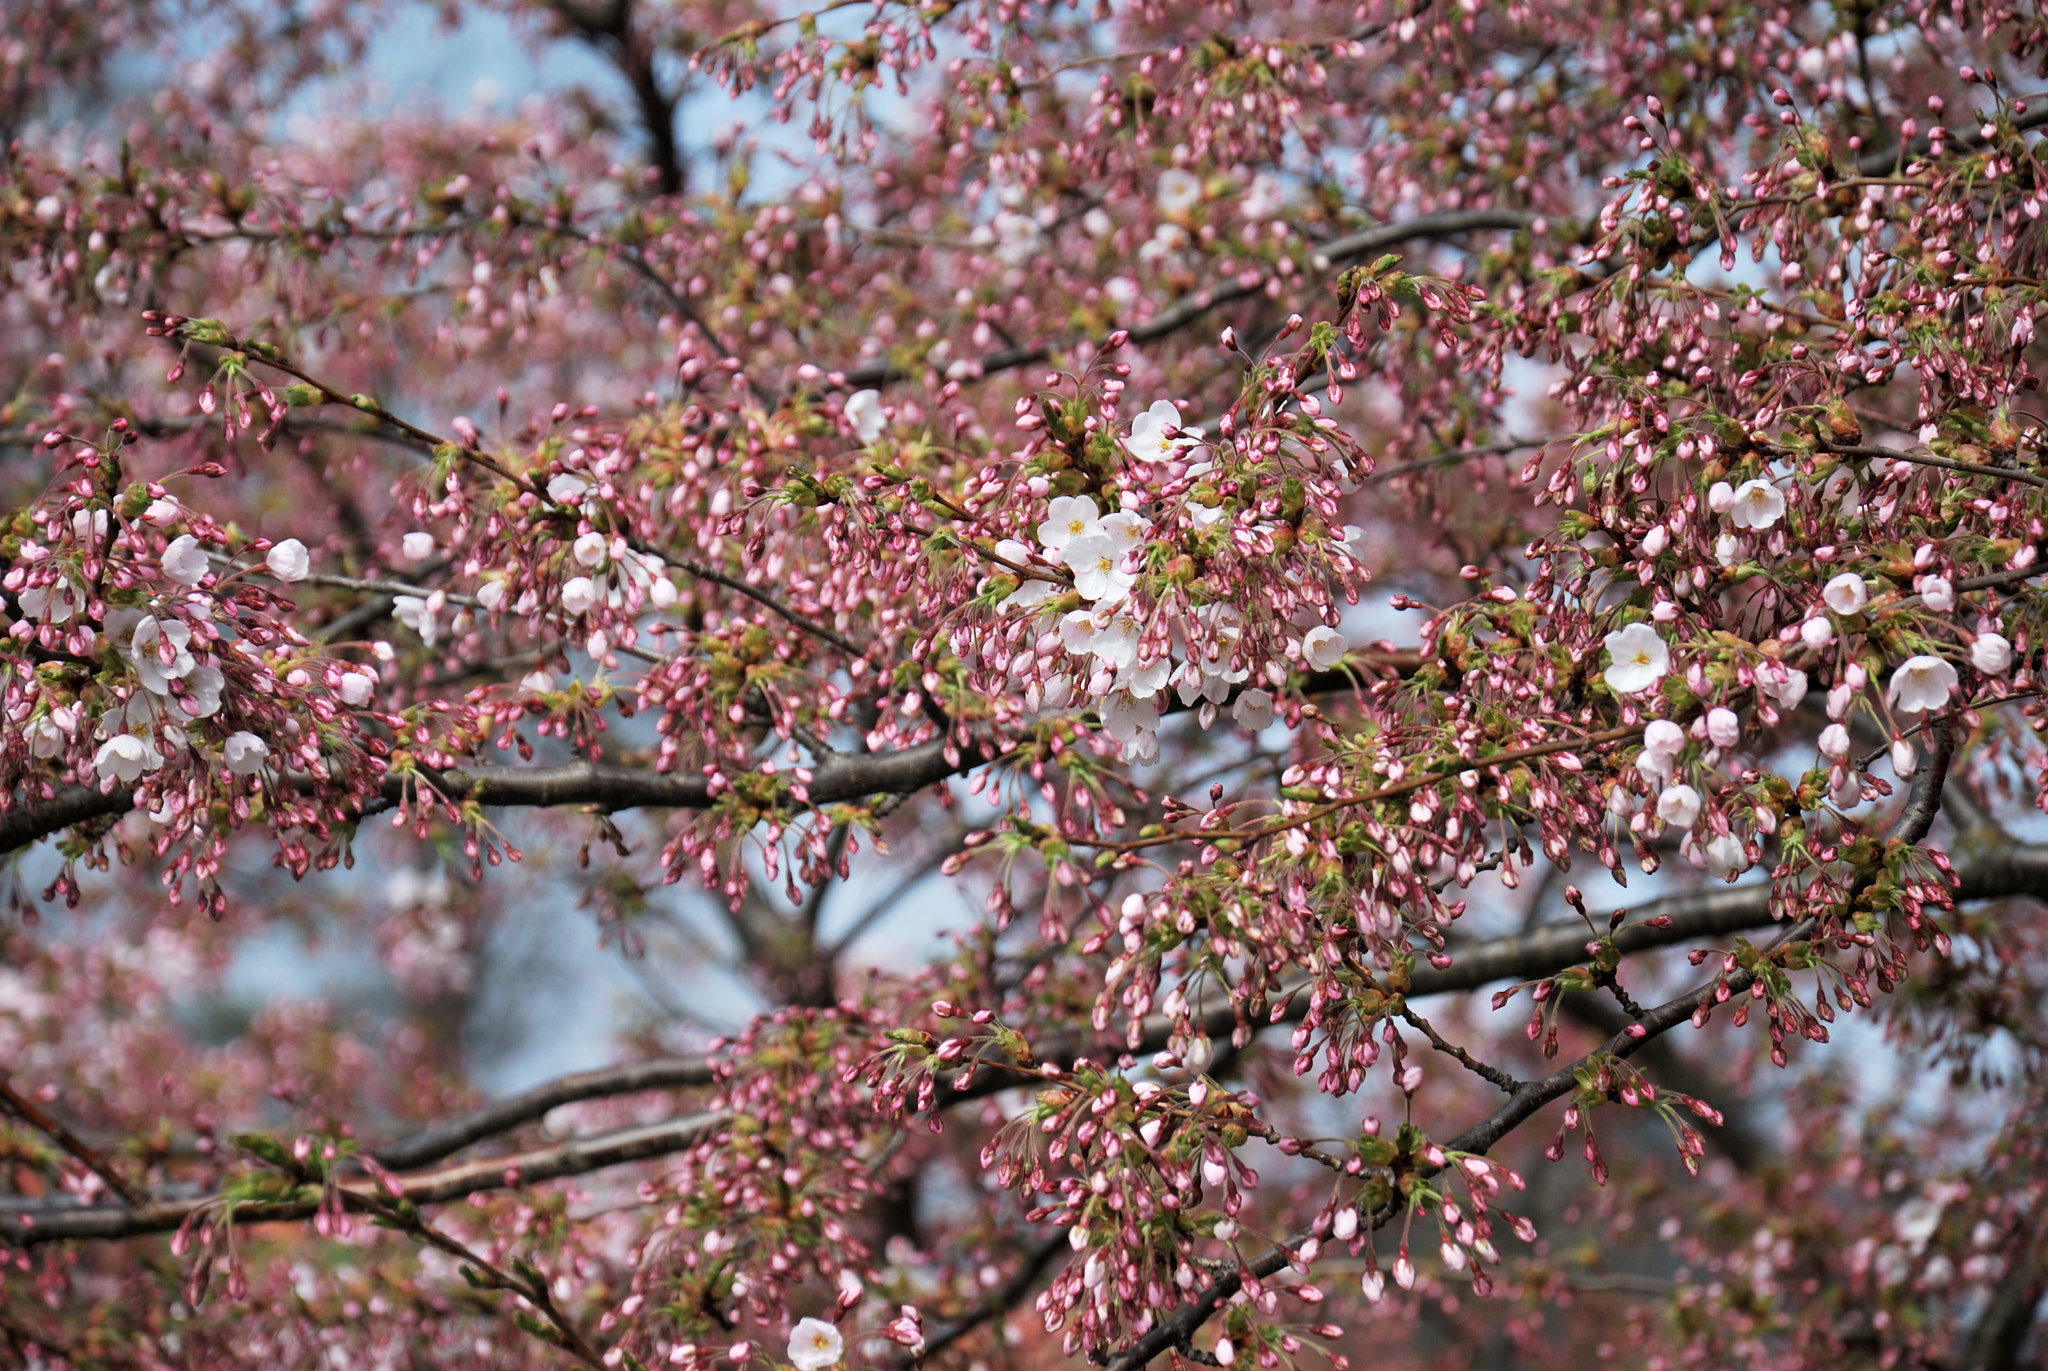 Nikon D60 + Nikon AF-S DX Nikkor 18-105mm F3.5-5.6G ED VR sample photo. Blooming spring in copenhagen photography